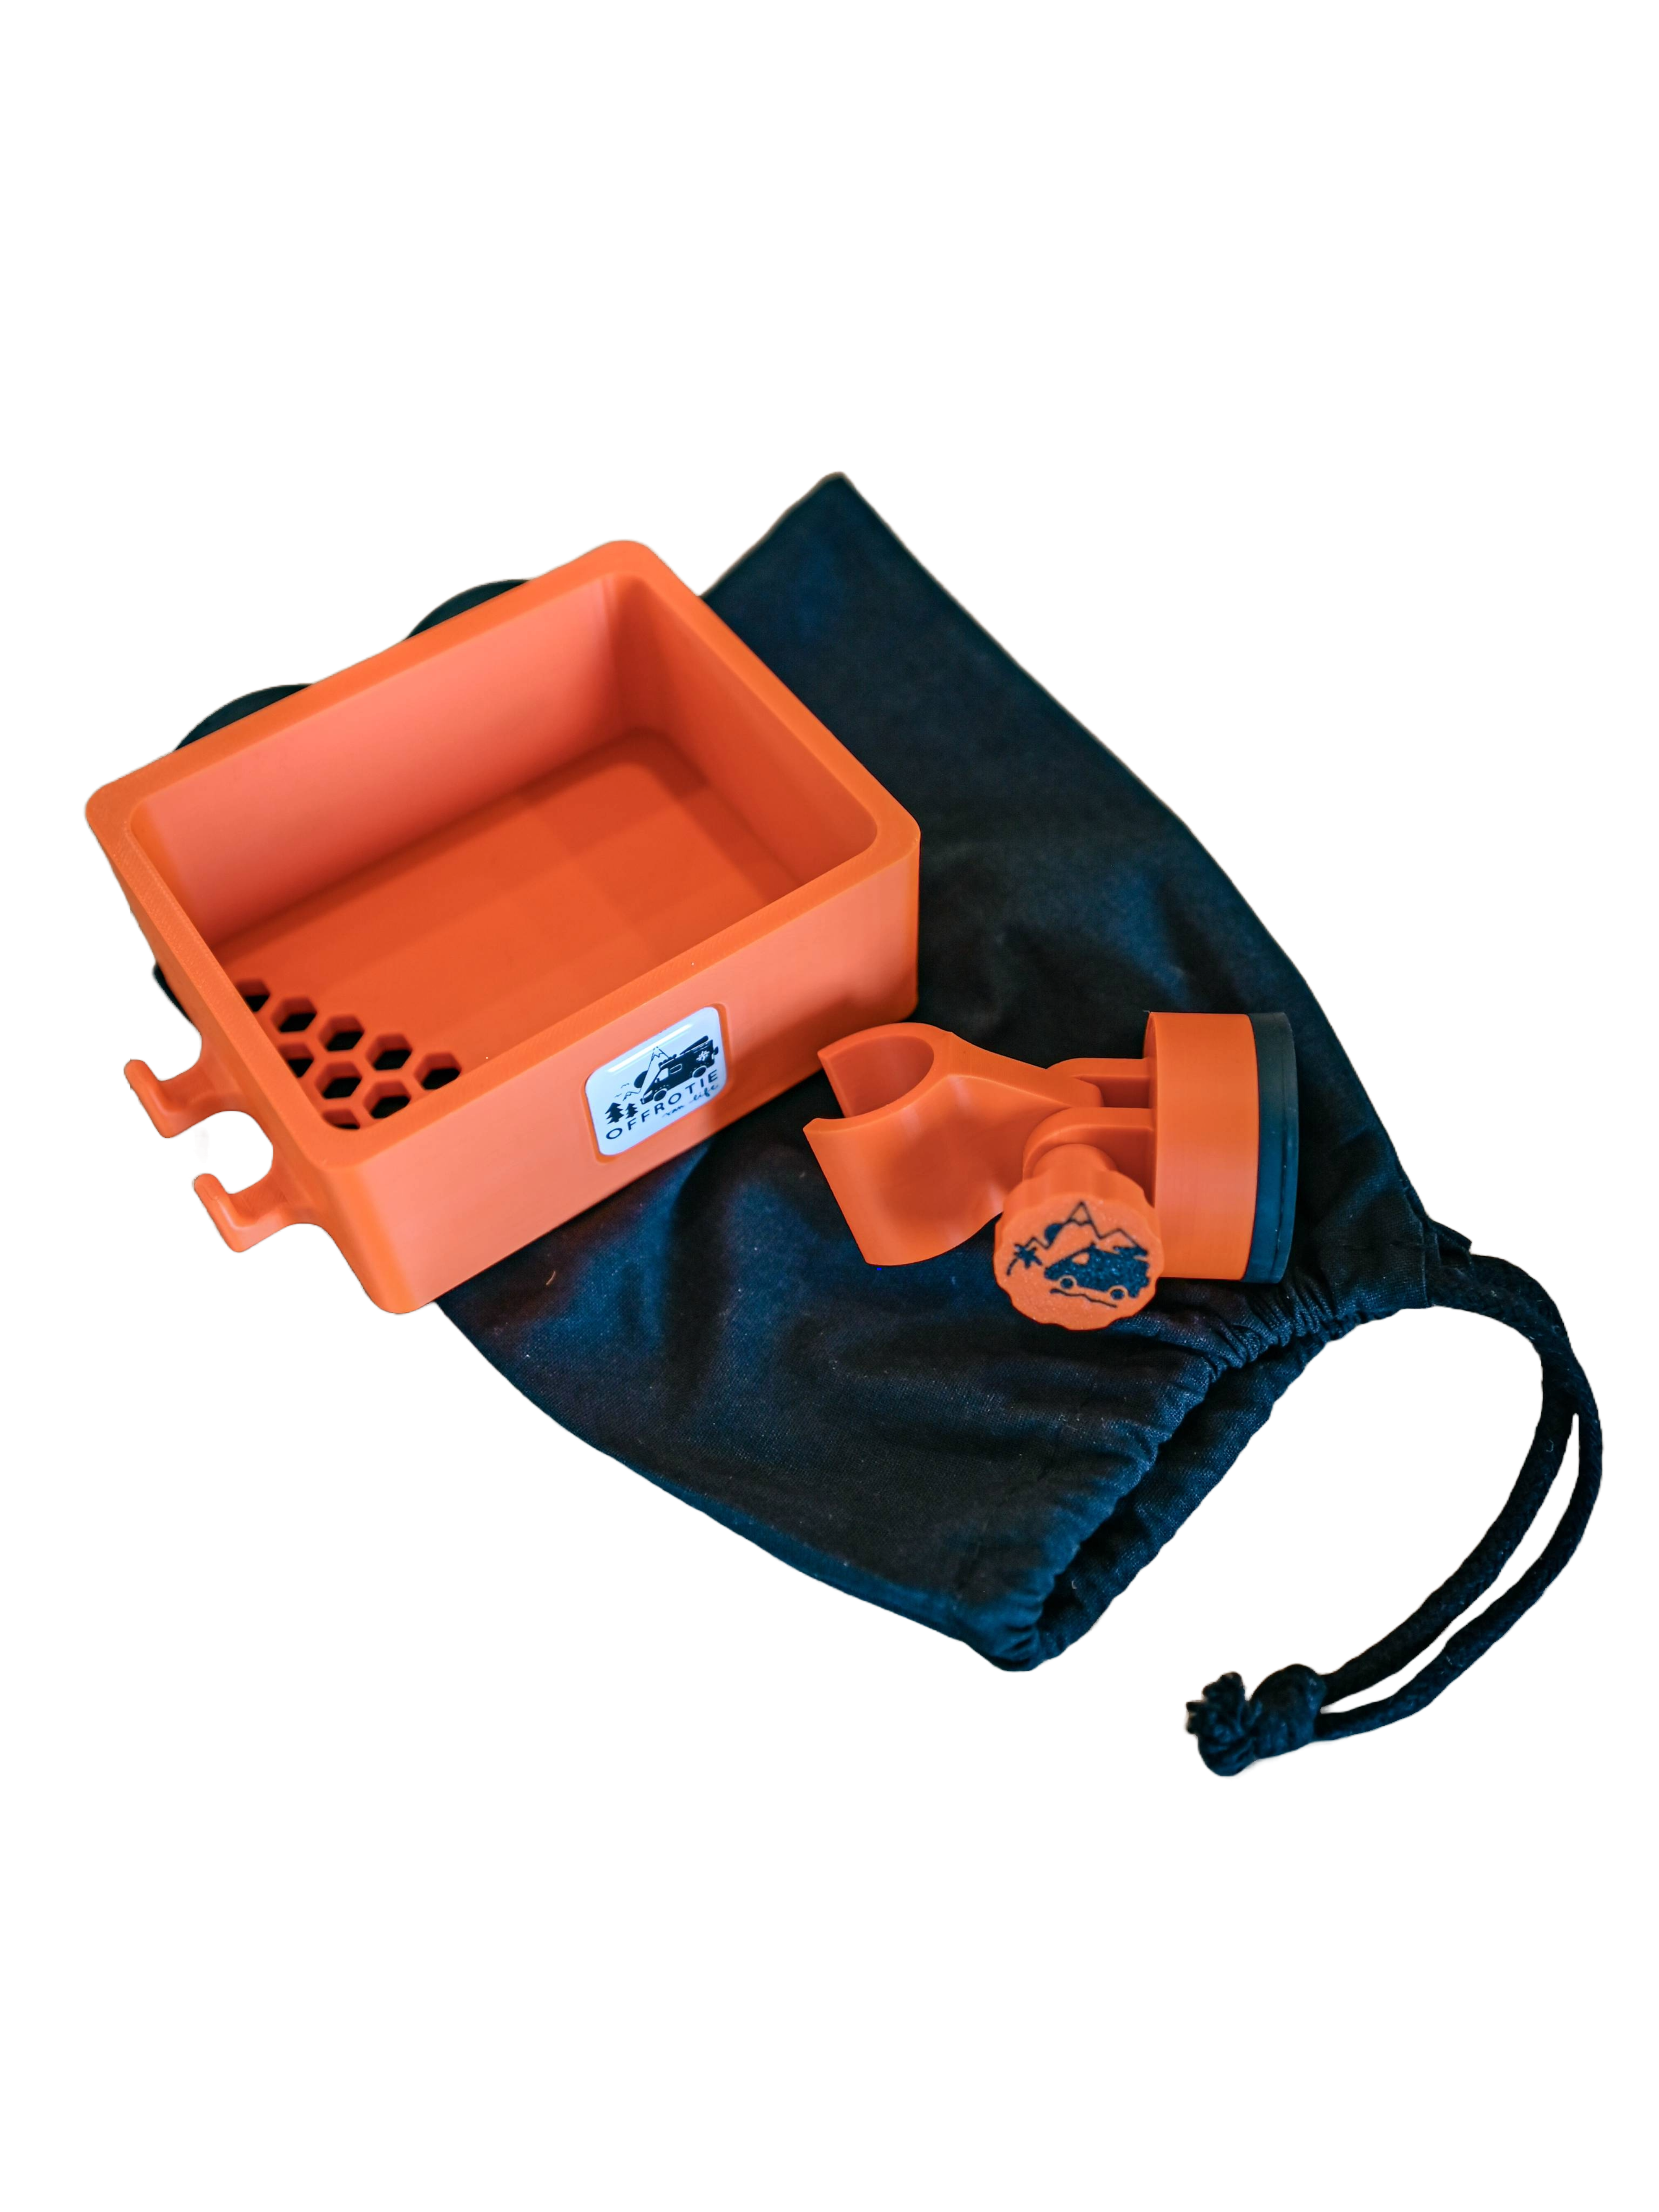 Kit supporto e cestino per doccia magnetico stampato in 3D Offrotie - Portatile per Vanlife